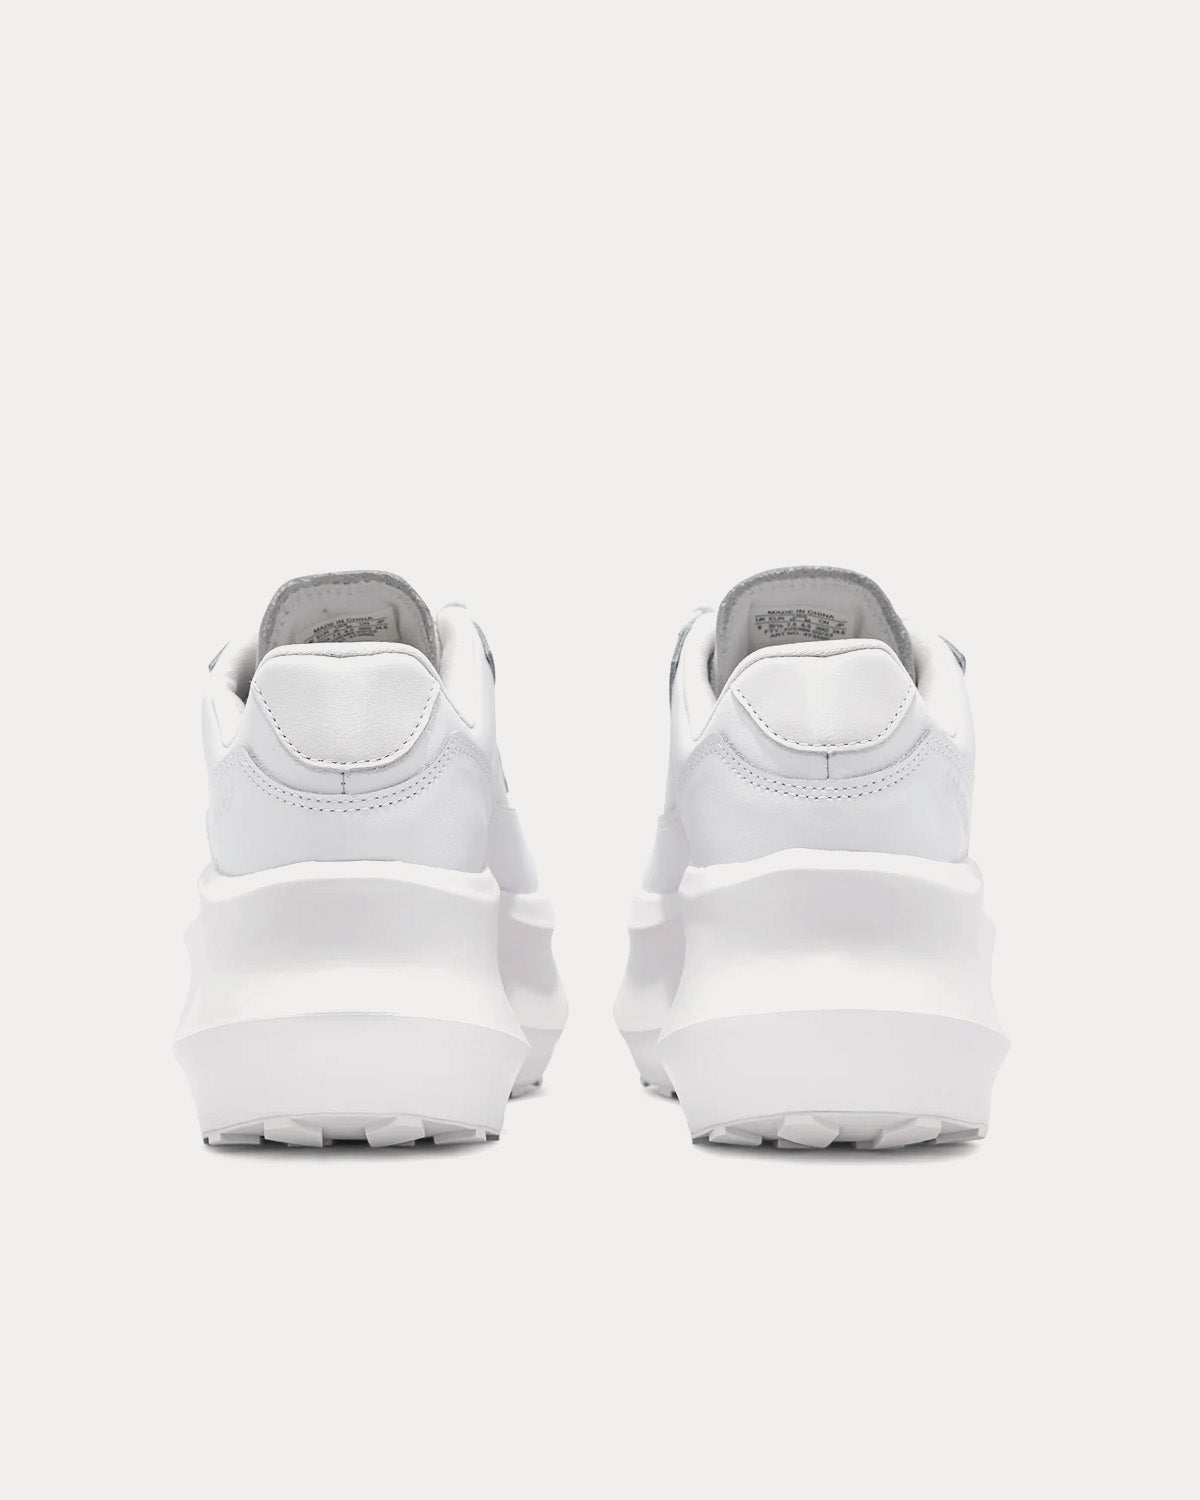 Salomon x Comme des Garçons - SR811 Platform Leather White Low Top Sneakers